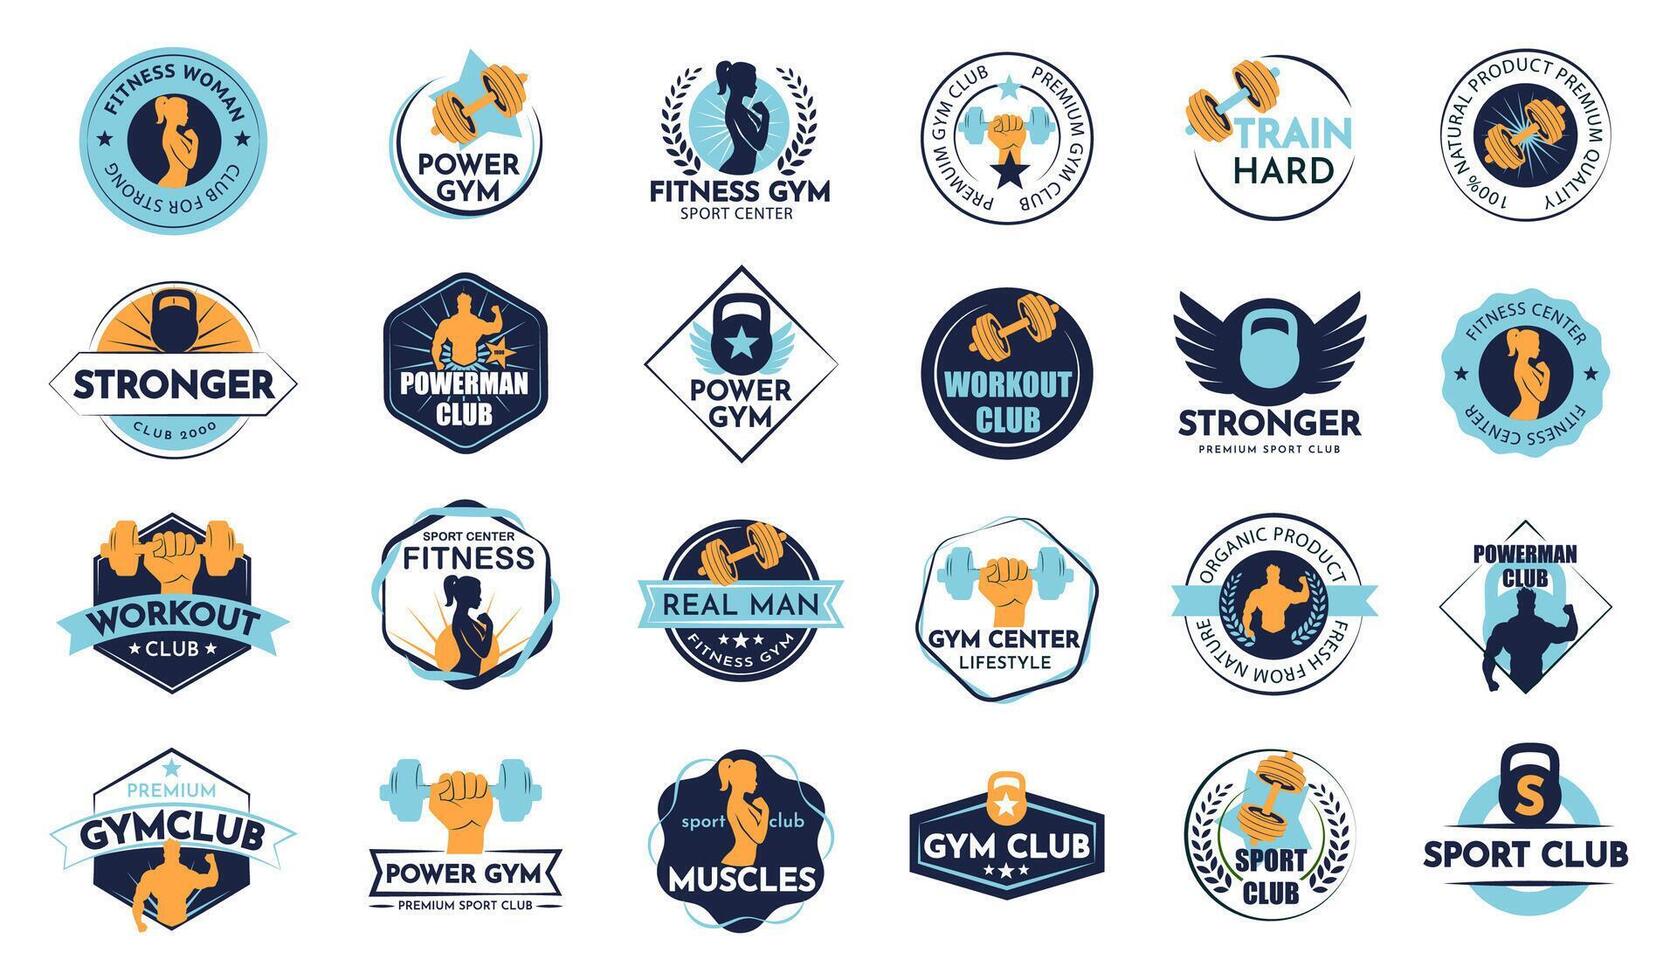 de Sportschool club logo in een illustratie. groot verzameling badges voor sport ontwerp vector